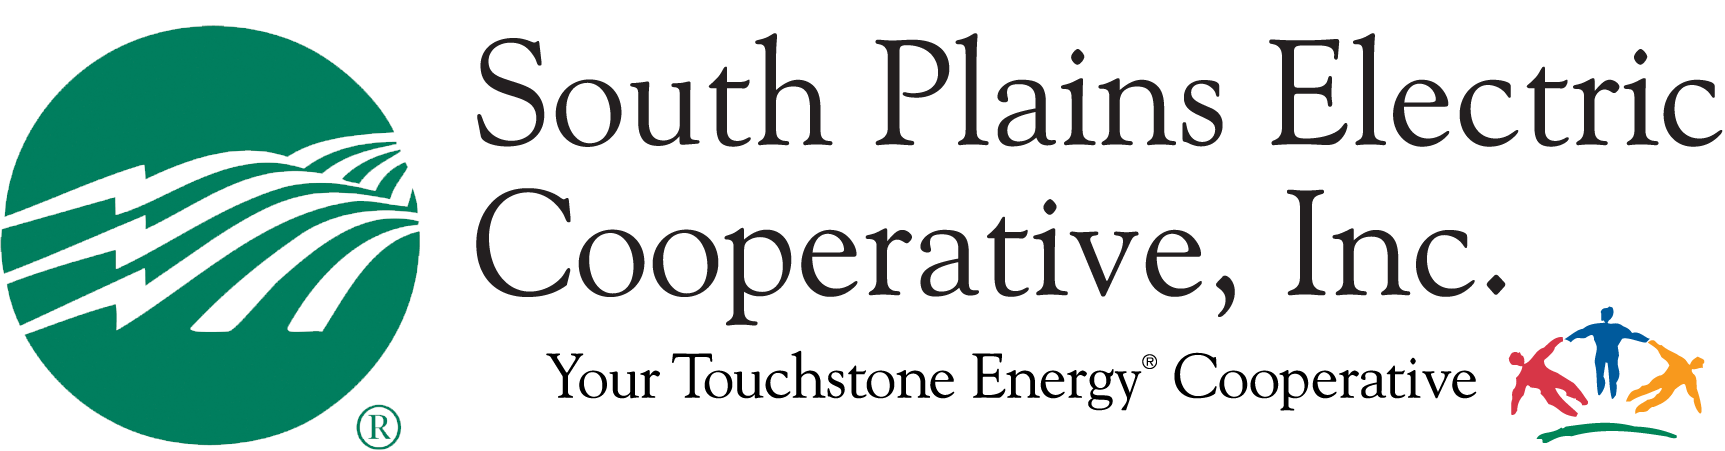 South Plains Electric